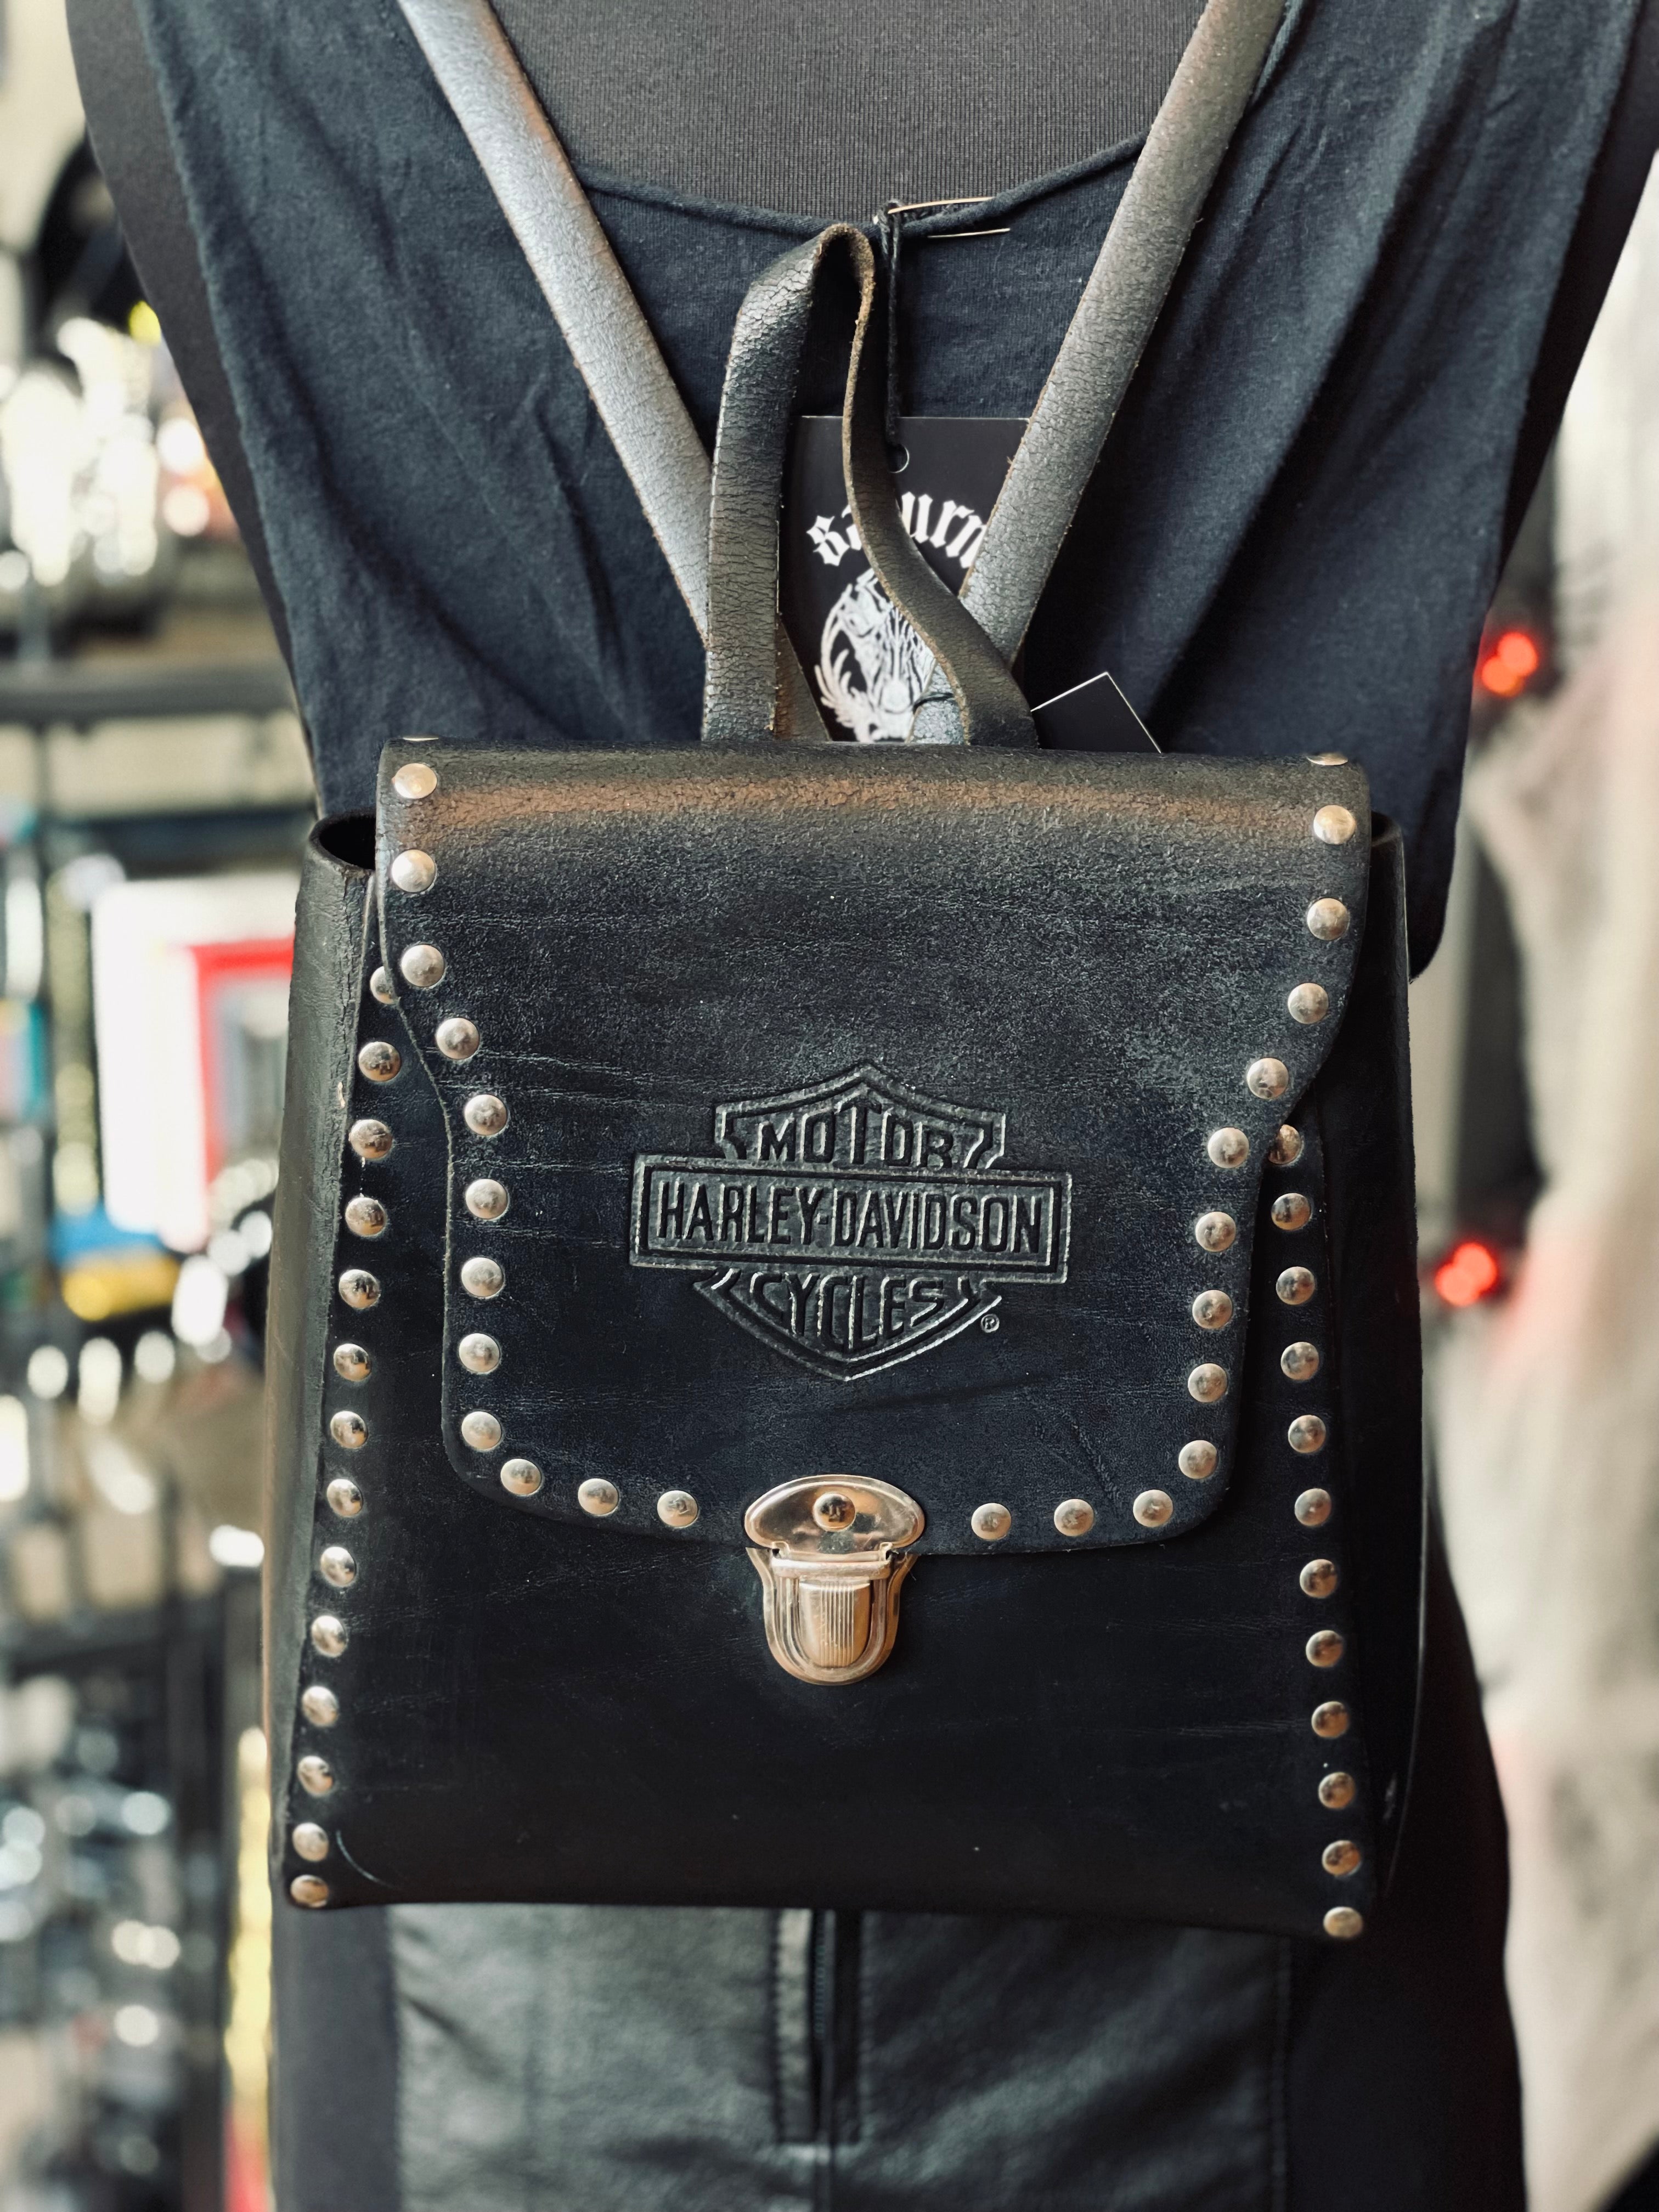 Just listed Vintage Leather Suede Harley-Davidson Purse #harleydavidson # vintage #antiques #collectibles #collecting #picking #resller…